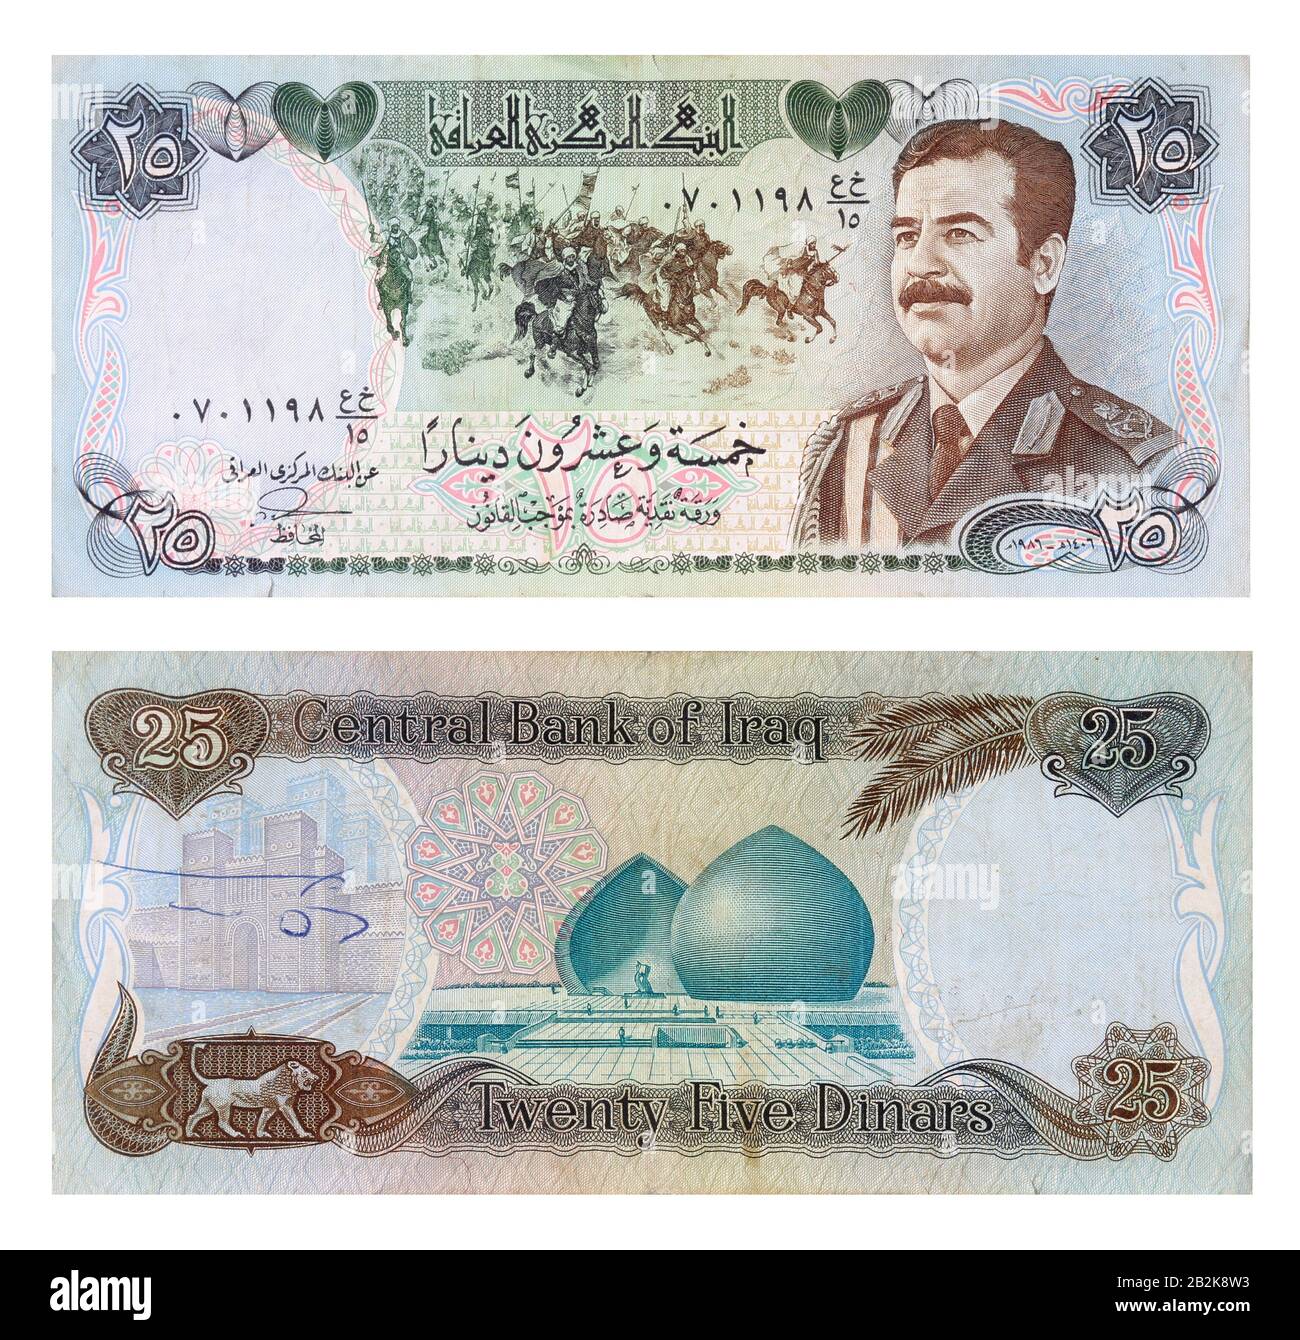 25 irakische Dinar-Banknote, die die Gravur des irakischen Präsidenten Saddam Hussein, die Schlacht von Qadisiyah und das Al-Shaheed Monument oder Martyr-Denkmal zeigt Stockfoto